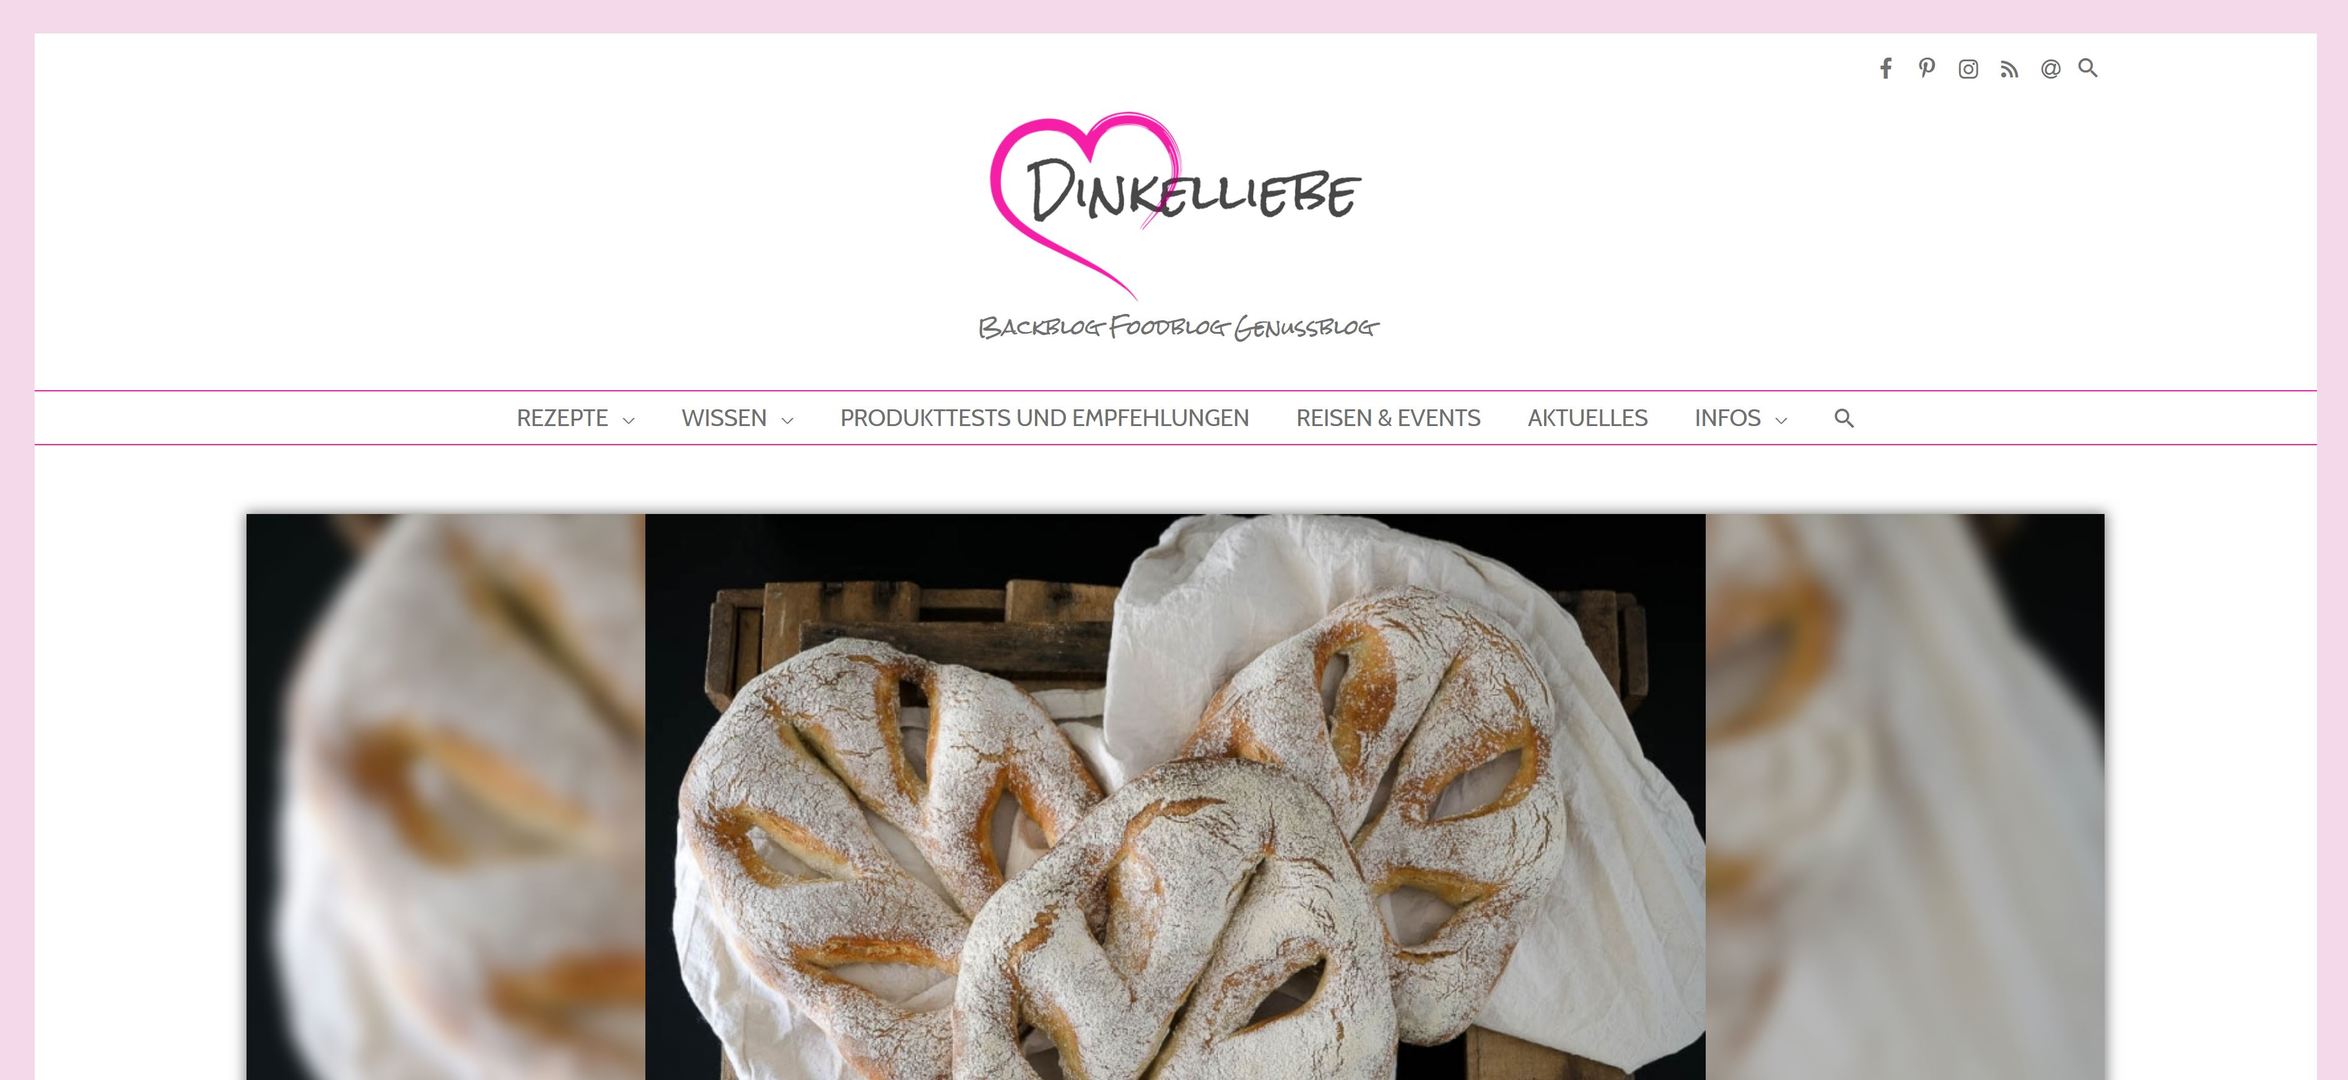 Titelbild zu Dinkelliebe | Backblog Foodblog Genussblog